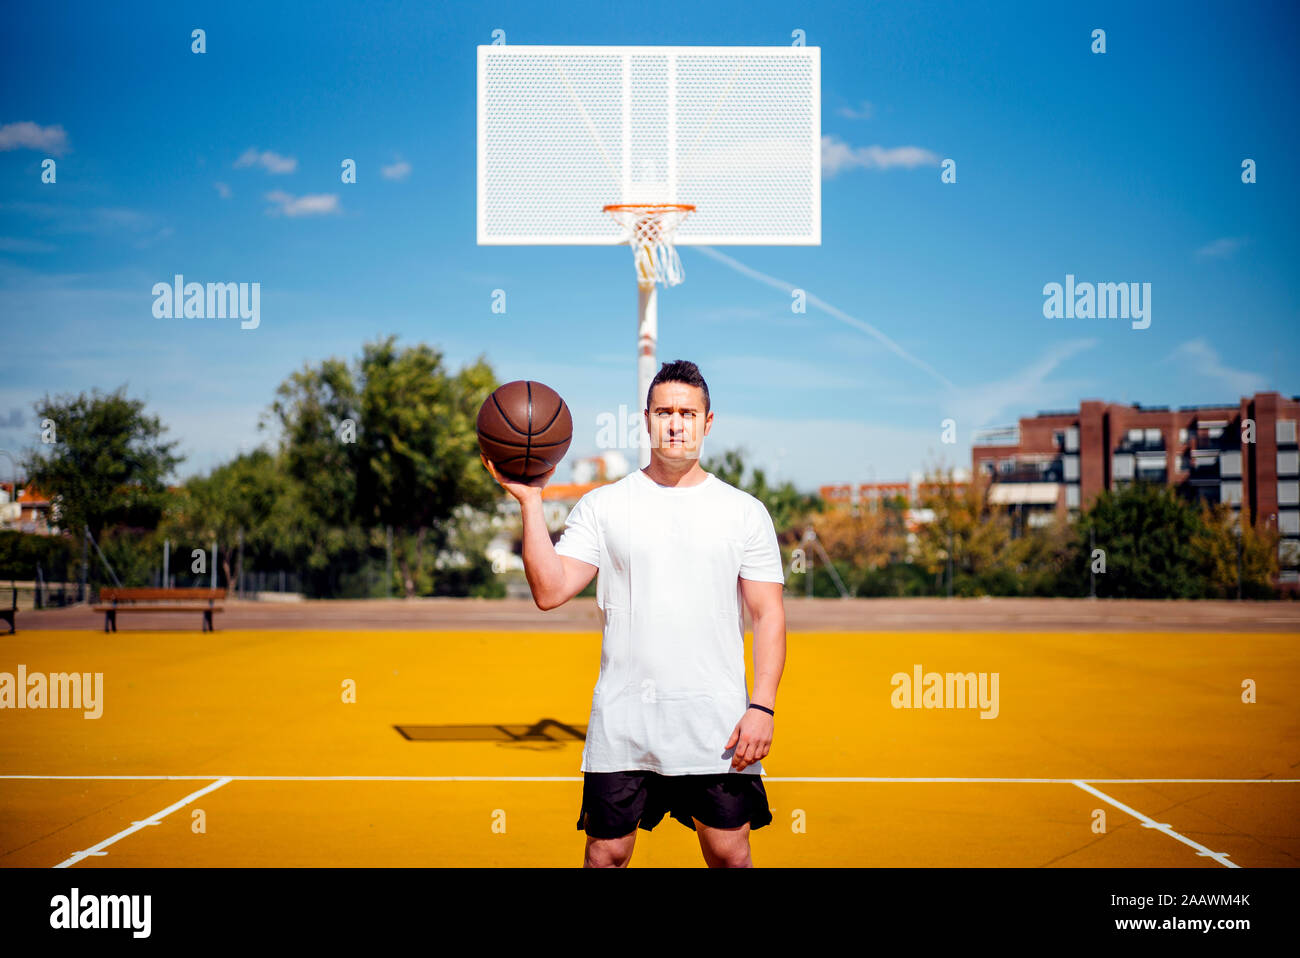 El jugador de baloncesto posando en cámara con el balón Foto de stock